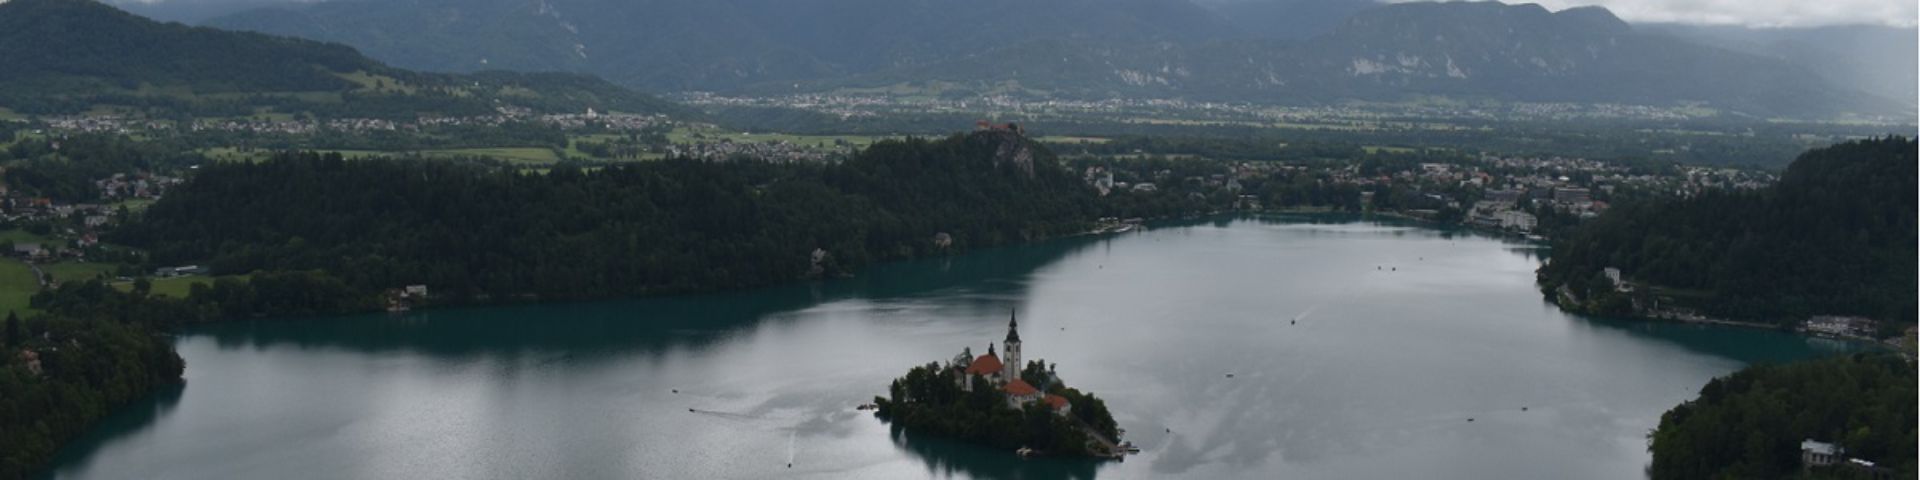 Lake Bled Osojnica hike - cover